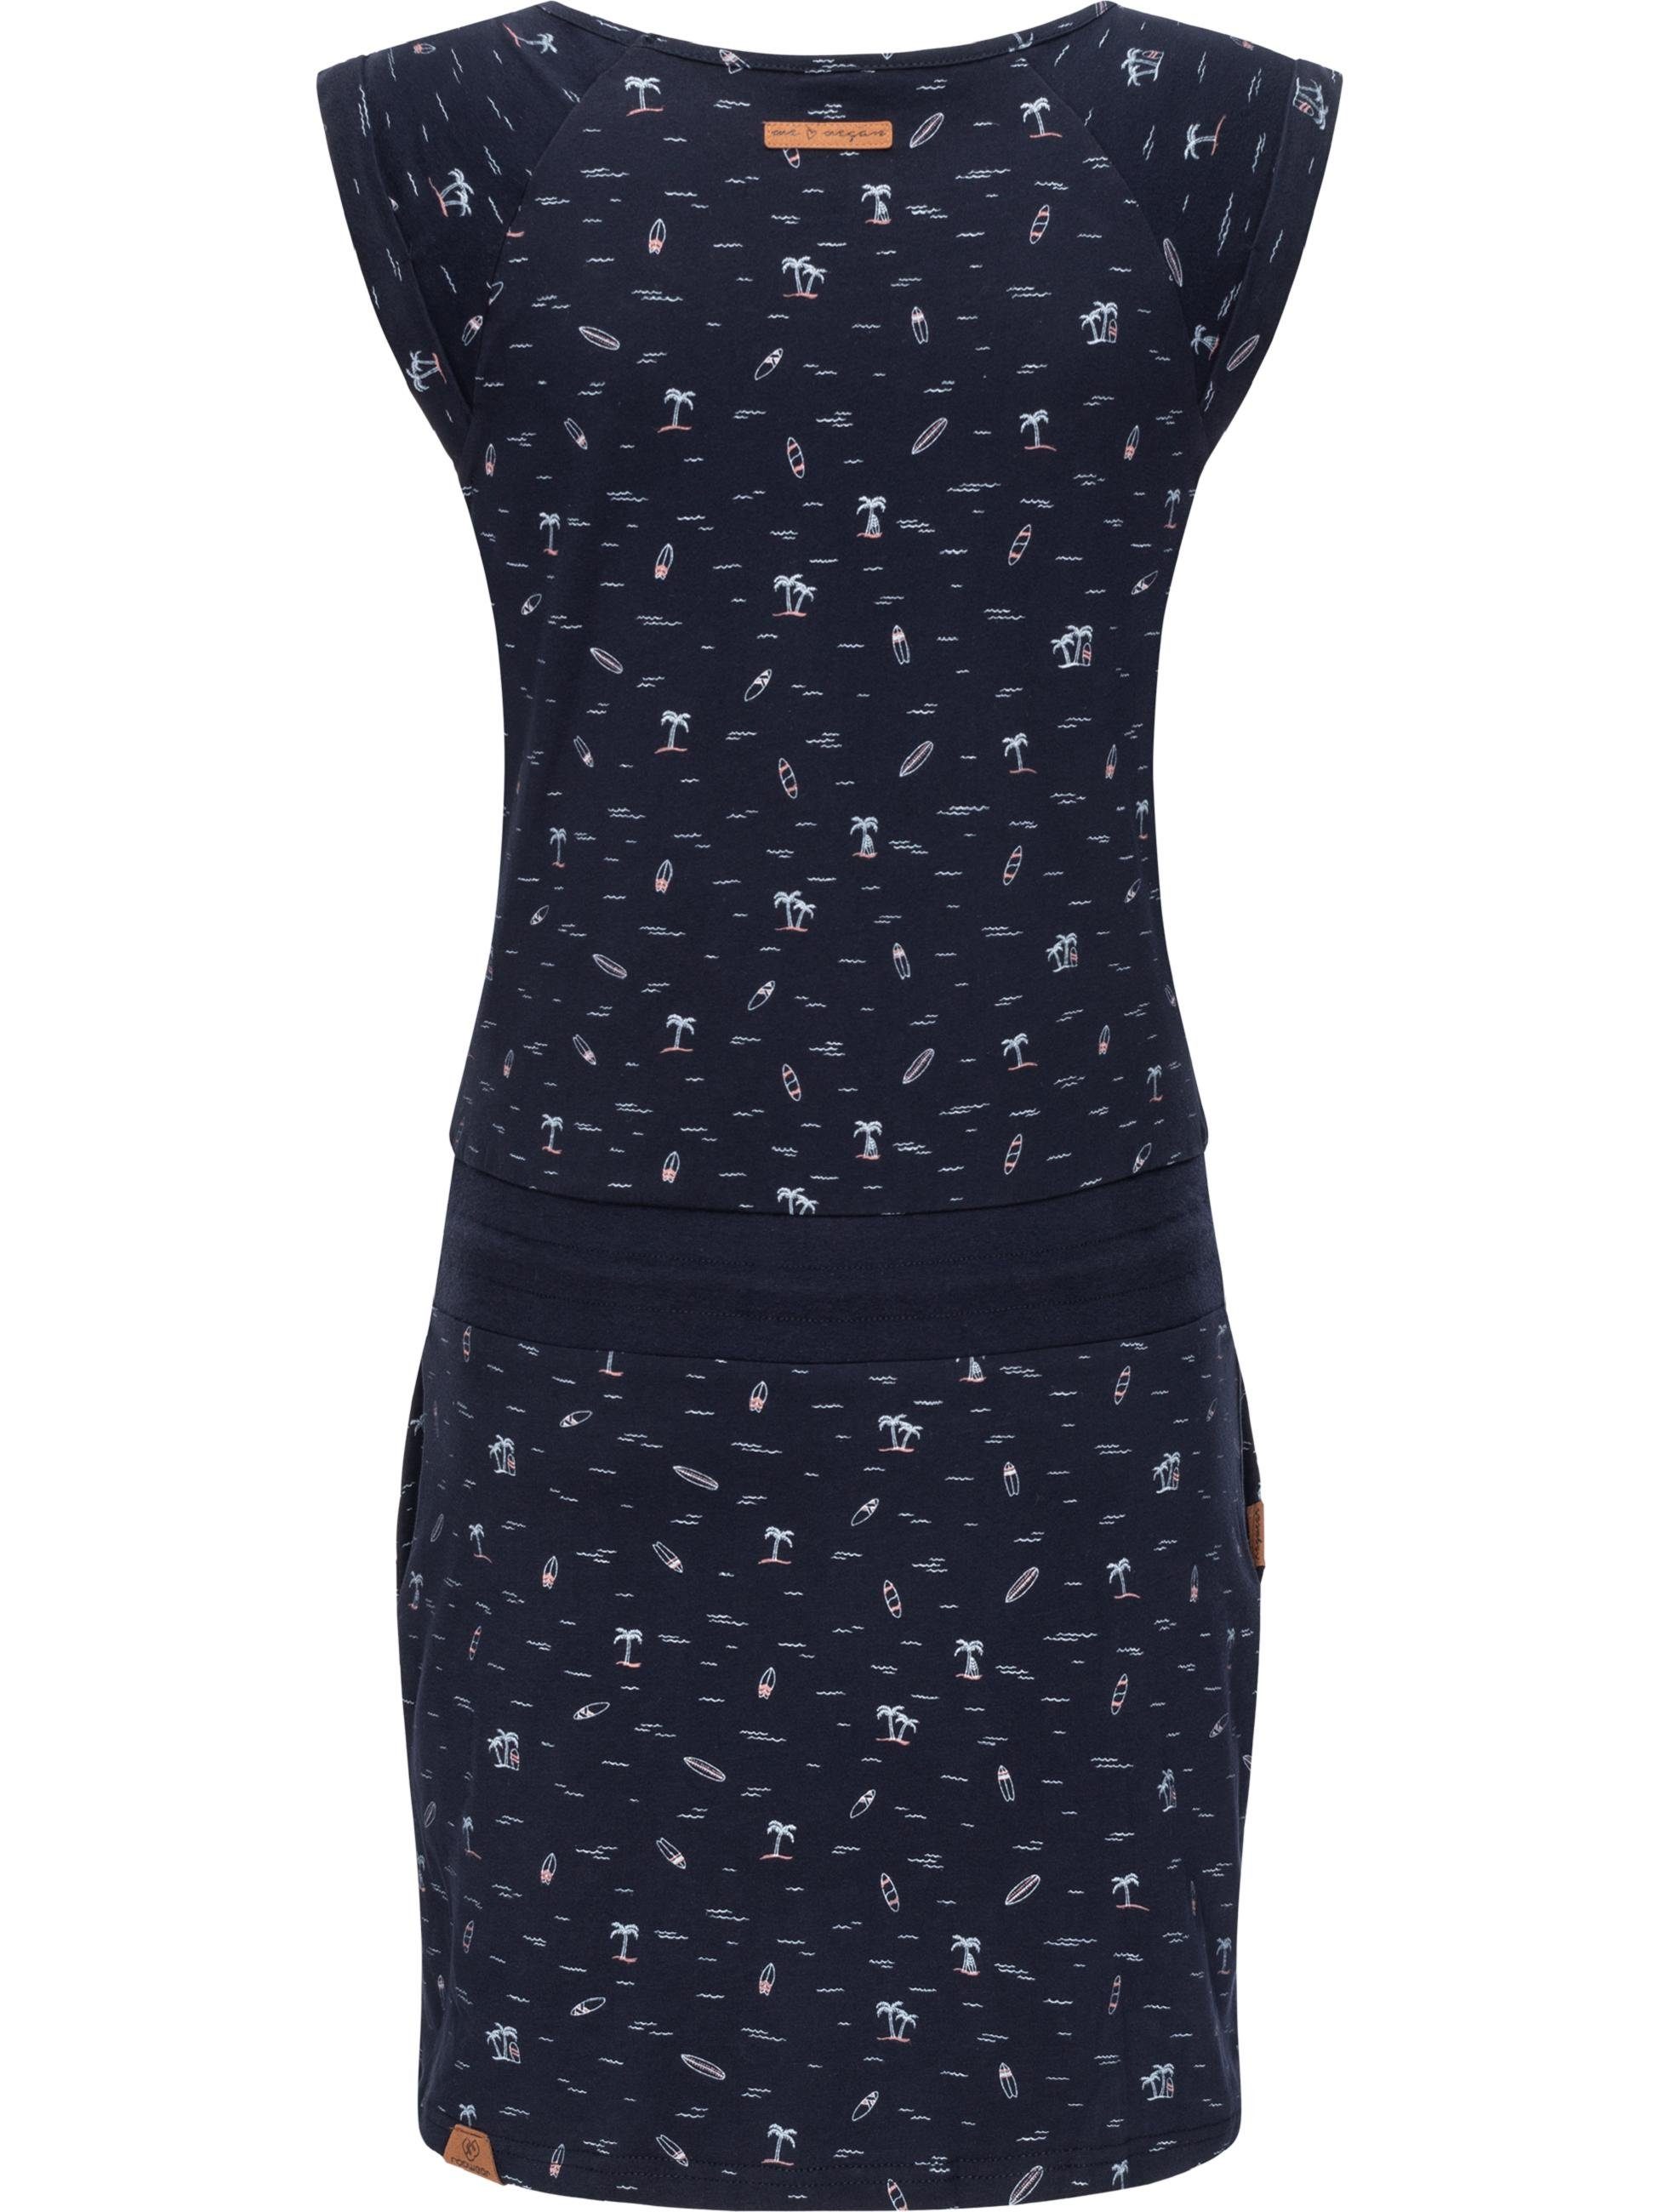 Kleid vegan Verarbeitung leichtes Ragwear Baumwoll Penelope Hochwertige hergestellt u. Sommerkleid 100% mit Print, Qualität,